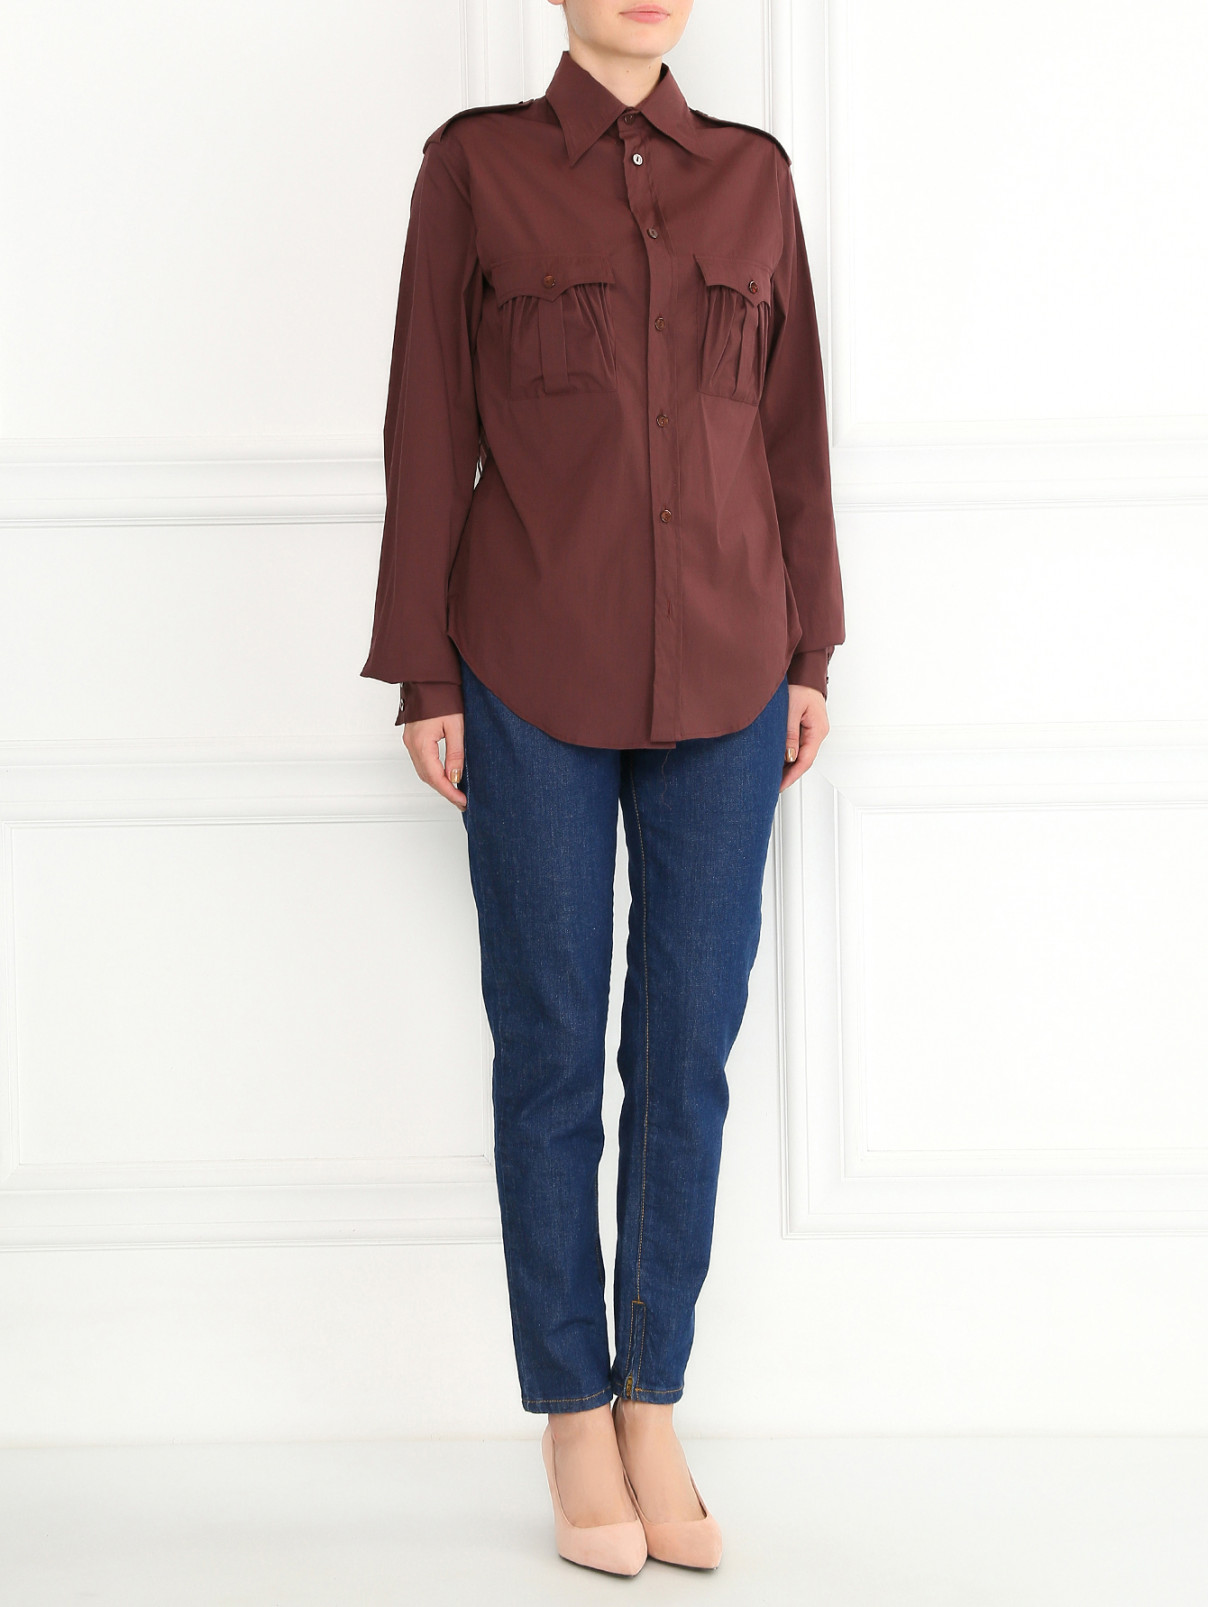 Рубашка из хлопка с нагрудными карманами Jean Paul Gaultier  –  Модель Общий вид  – Цвет:  Коричневый